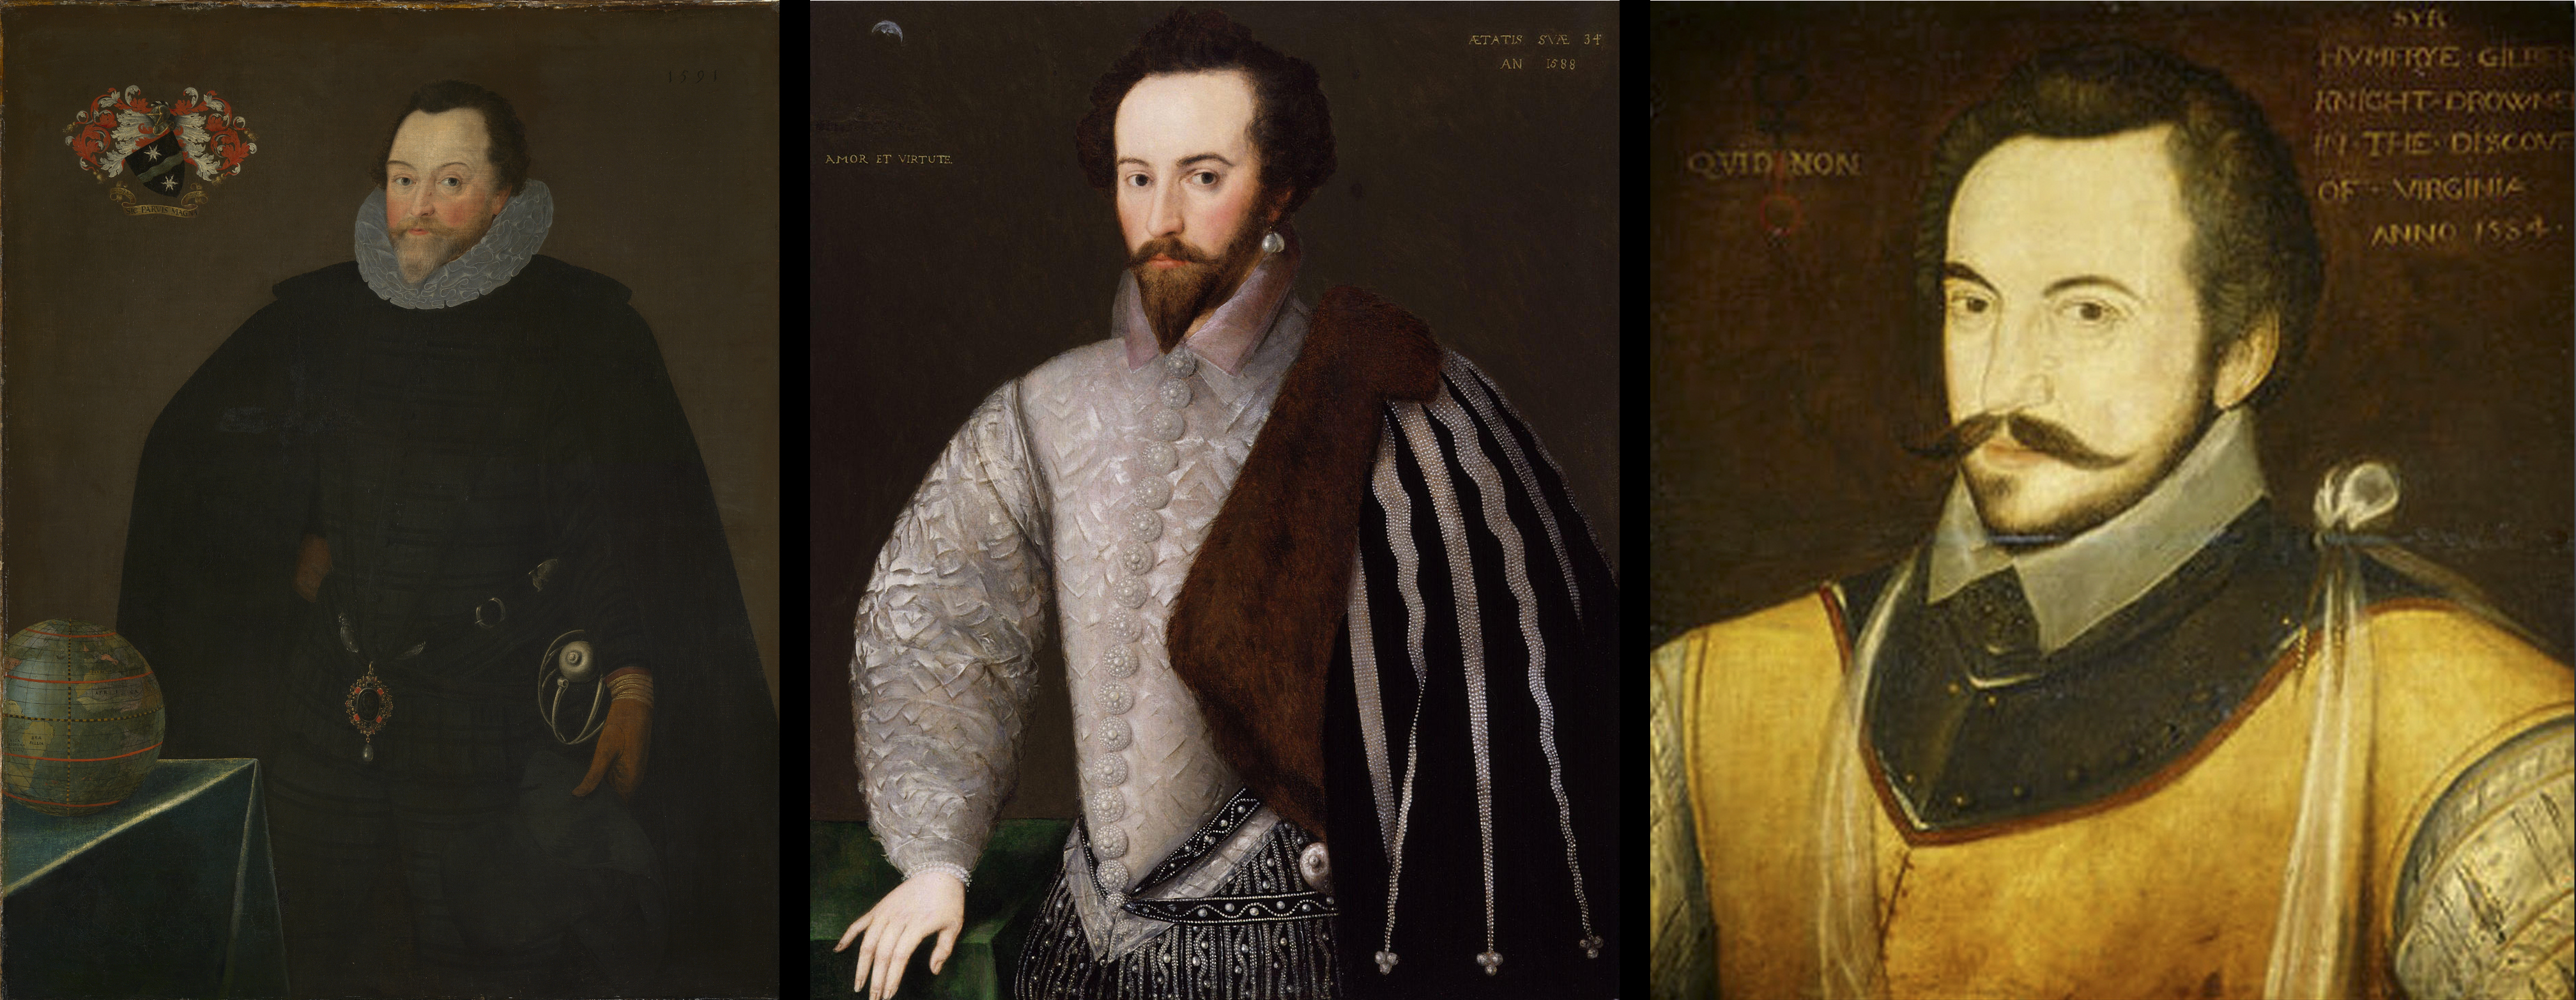 Her biri varlıklı bir İngiliz ailesinin ikinci oğlu olan üç büyük kâşif: soldan sağa Sir Francis Drake (1540 civarı–1596), Sir Walter Raleigh (1554 civarı–1618) ve Sir Humphrey Gilbert (1539 civarı–1583)